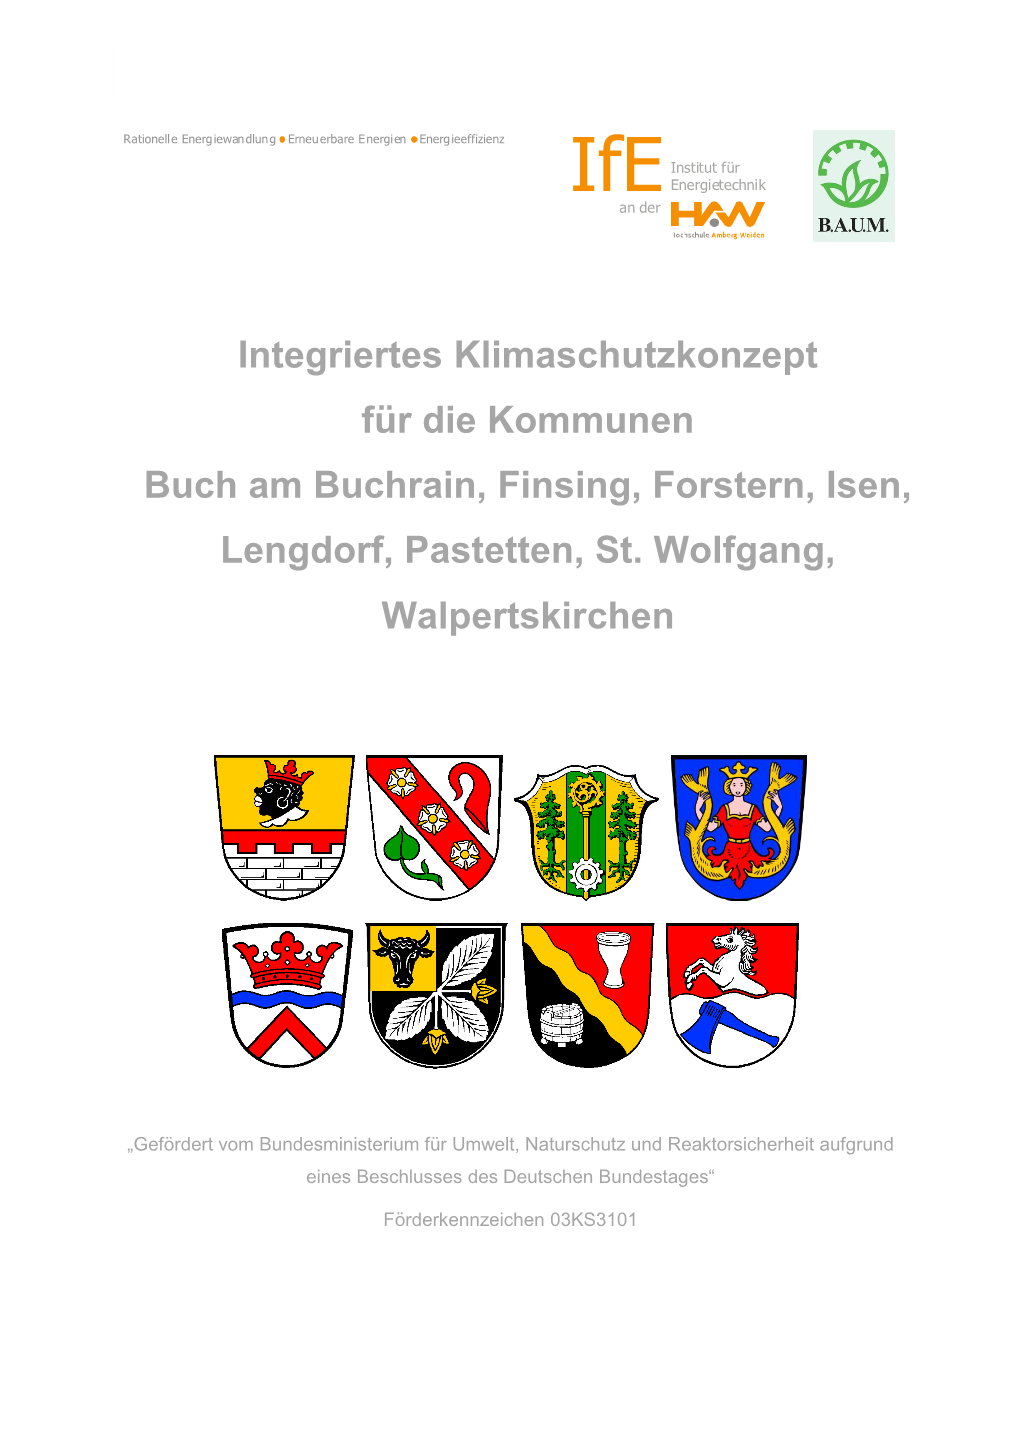 Integriertes Klimaschutzkonzept Für Die Kommunen Buch Am Buchrain, Finsing, Forstern, Isen, Lengdorf, Pastetten, St